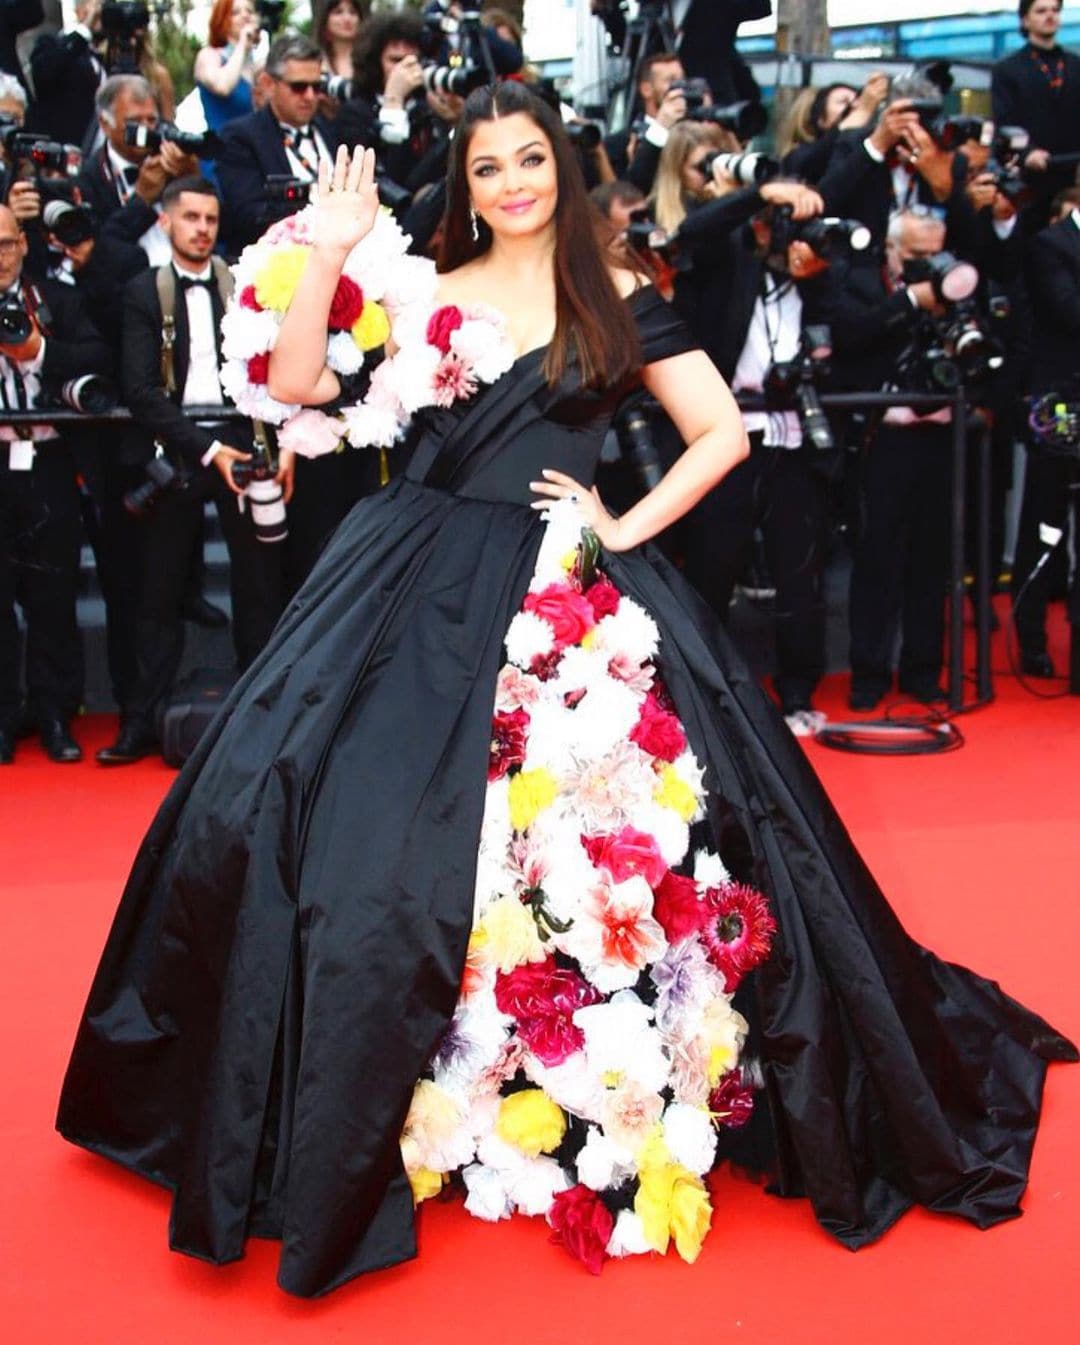 Aishwarya Rai Bachchan bloomed in the Dolce & Gabbana gown